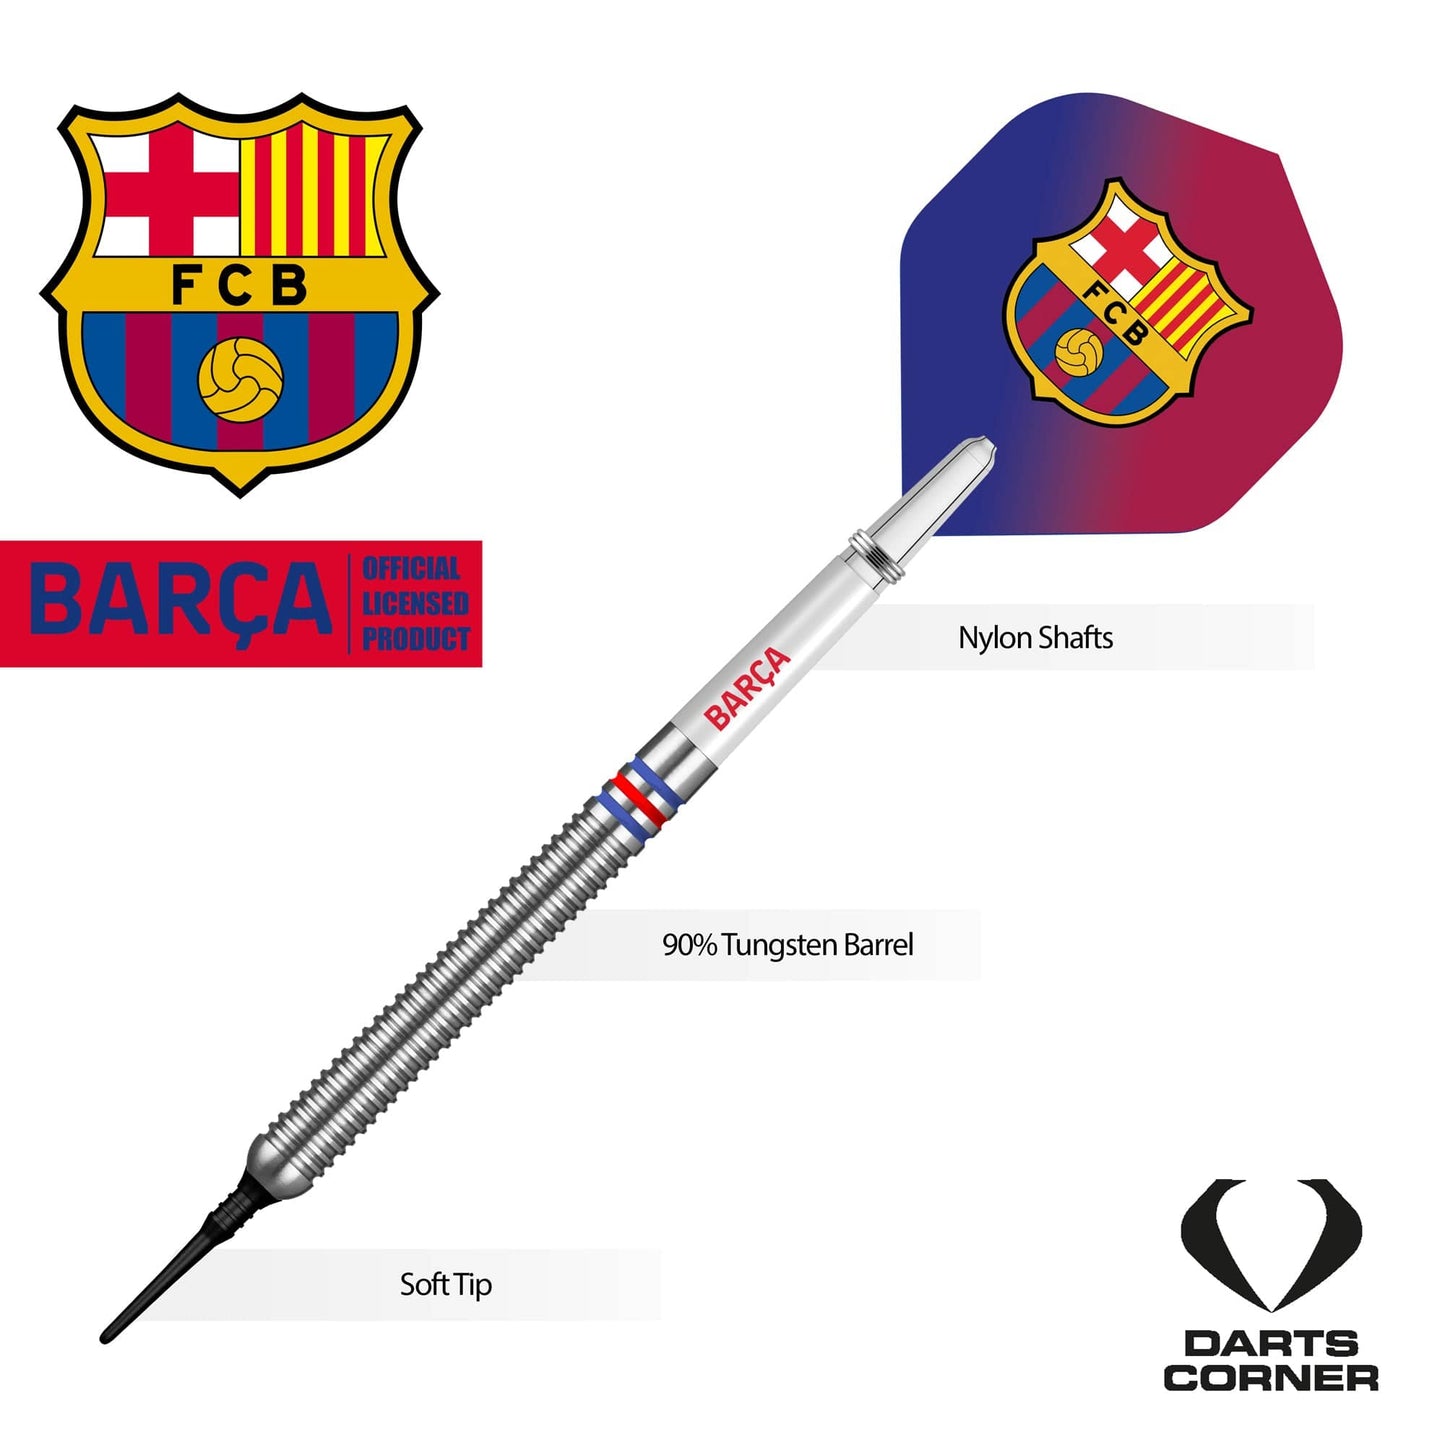 FC Barcelona - Official Licensed BARÇA - Soft Tip Darts - Tungsten - BARÇA - 18g 18g